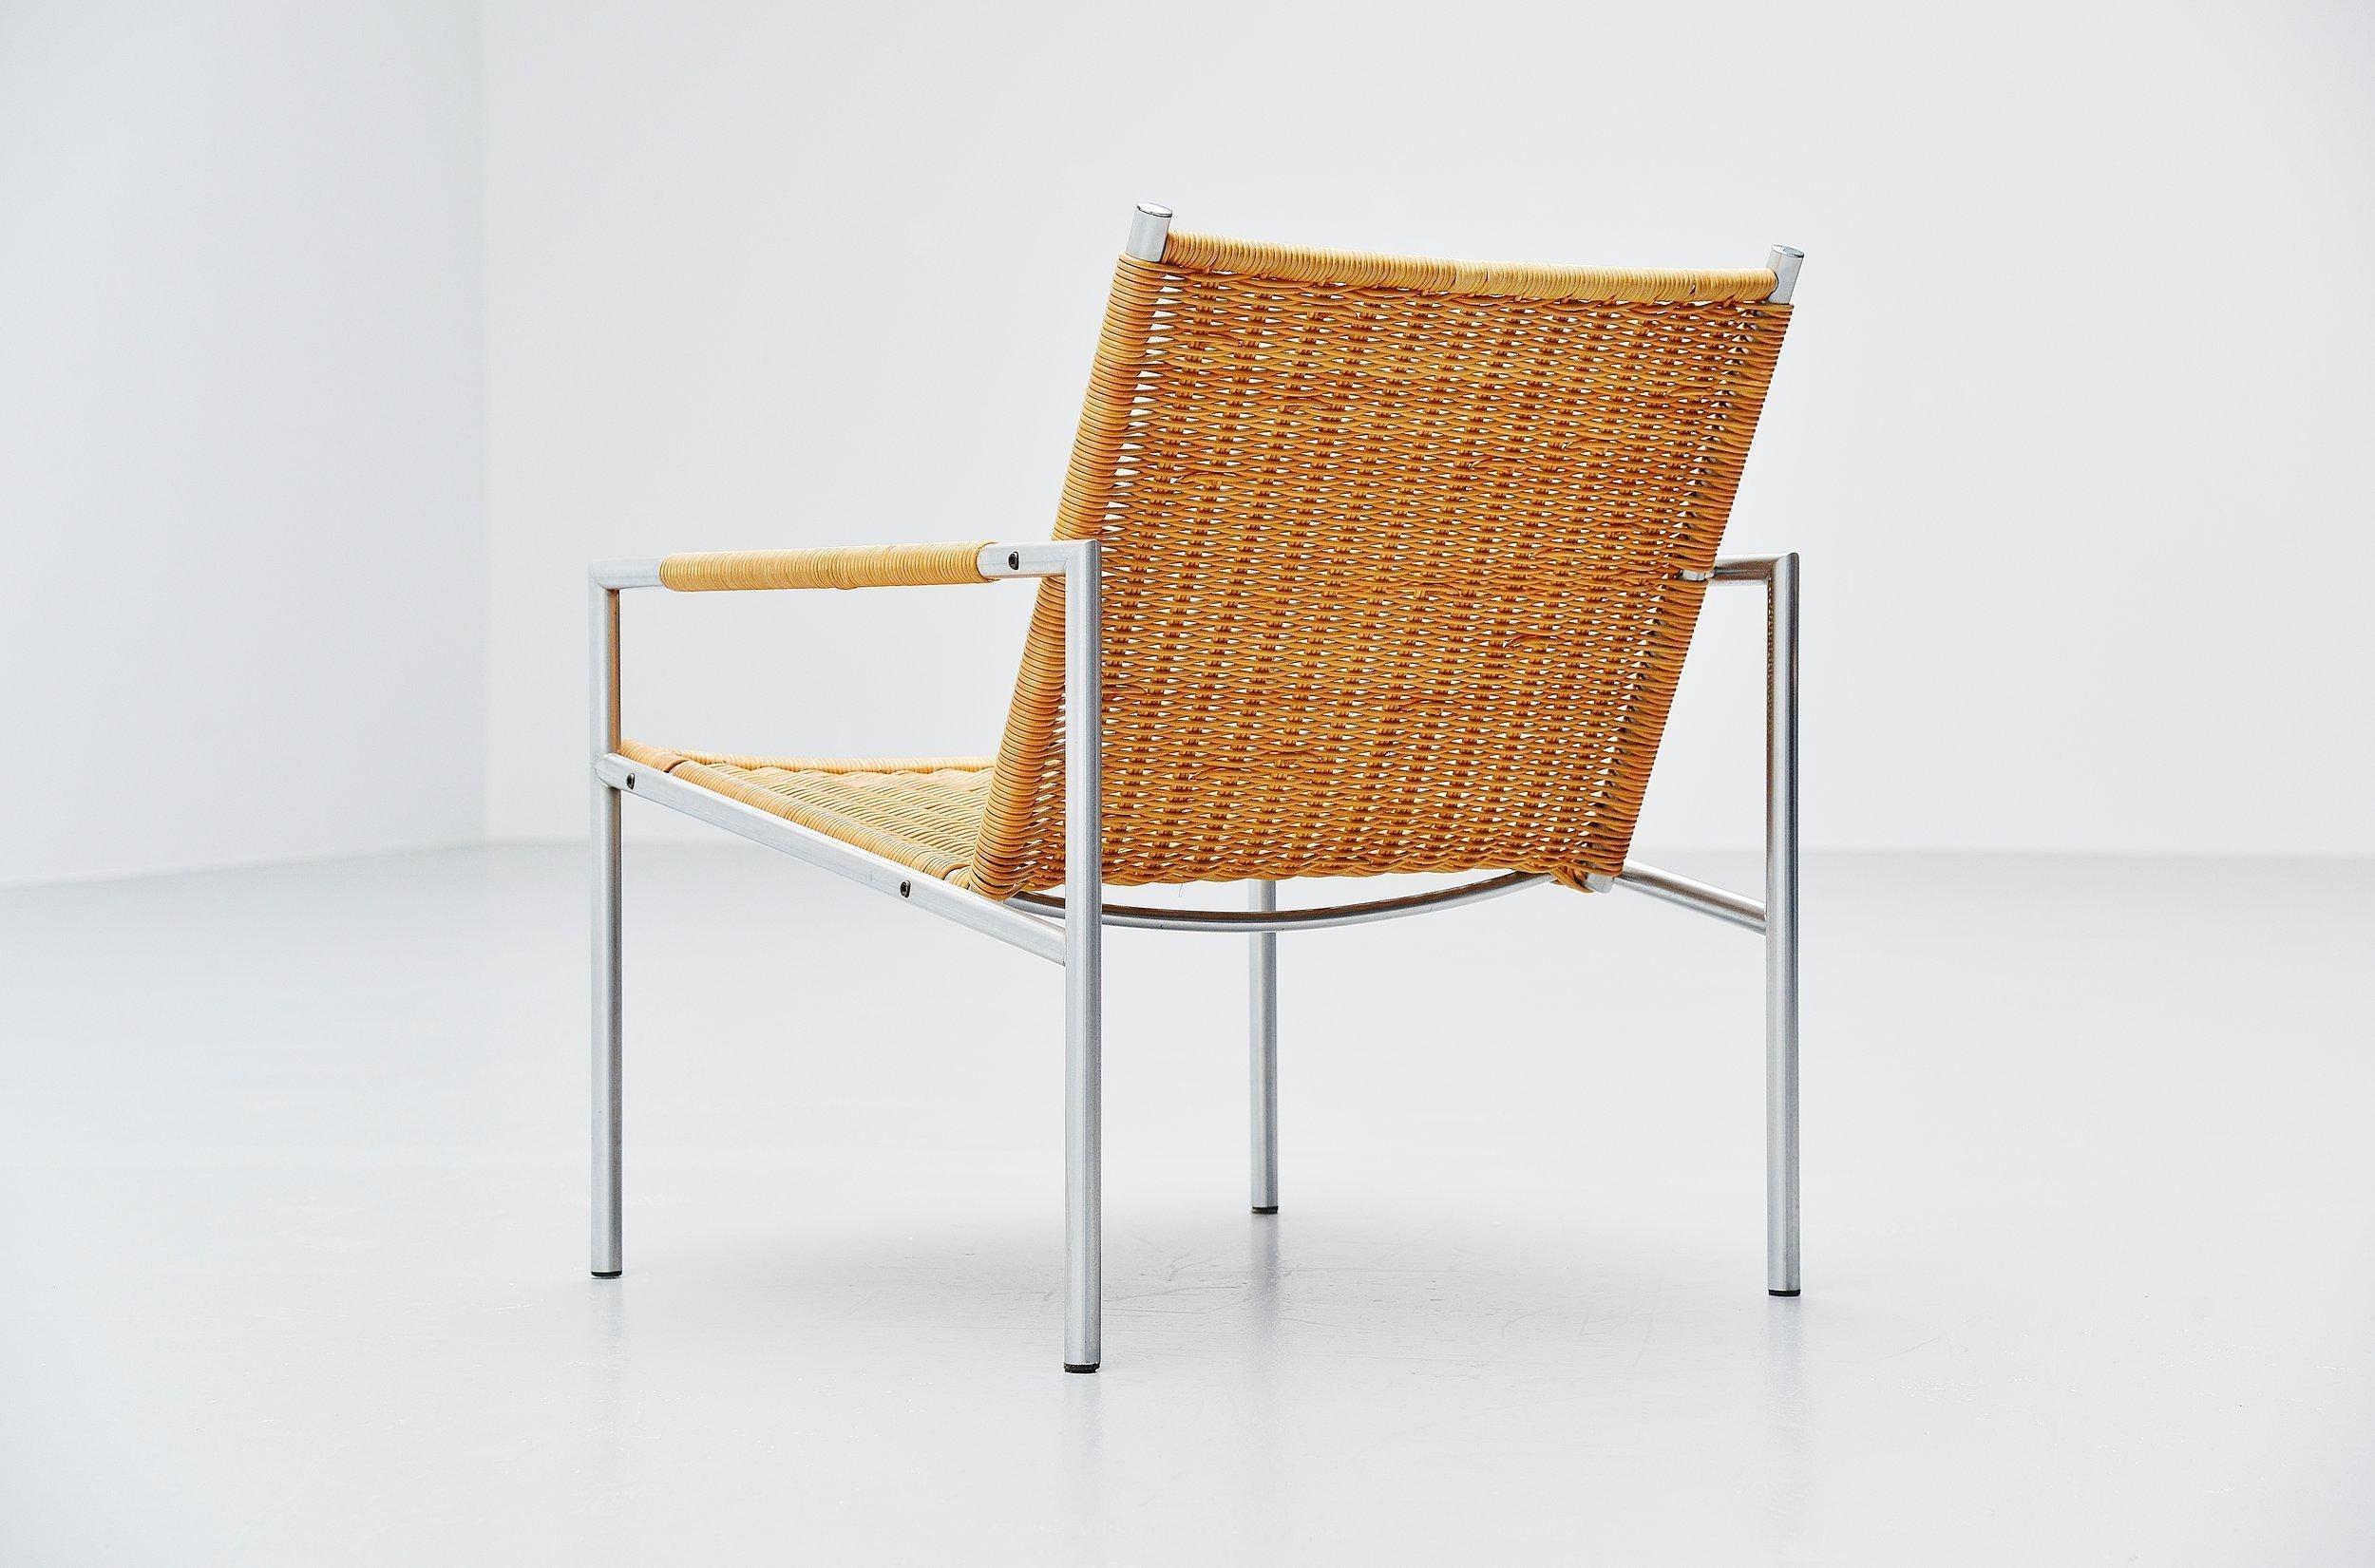 Modernistischer Loungesessel Modell SZ01, entworfen von Martin Visser für 't Spectrum, Holland, 1960. Der Stuhl hat einen gebürsteten Stahlrohrrahmen und sehr schöne geflochtene Rohrsitze und Armlehnen. Das Rohr hat eine schöne Patina vom Gebrauch,